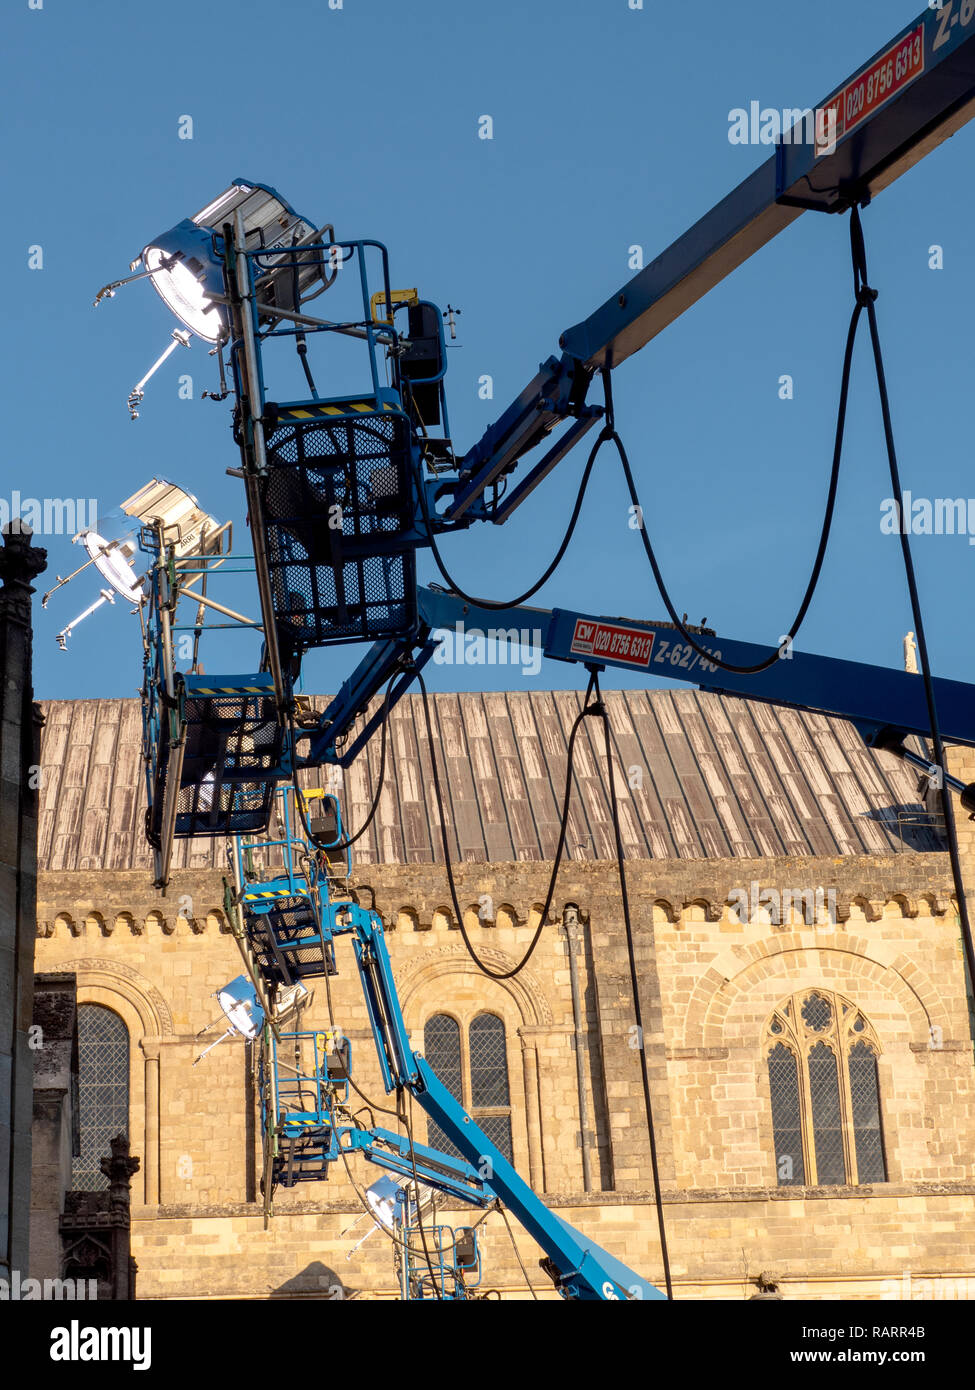 Des unités d'éclairage extérieur pour le tournage, la cathédrale de Winchester, Winchester, Hampshire, England, UK. Banque D'Images